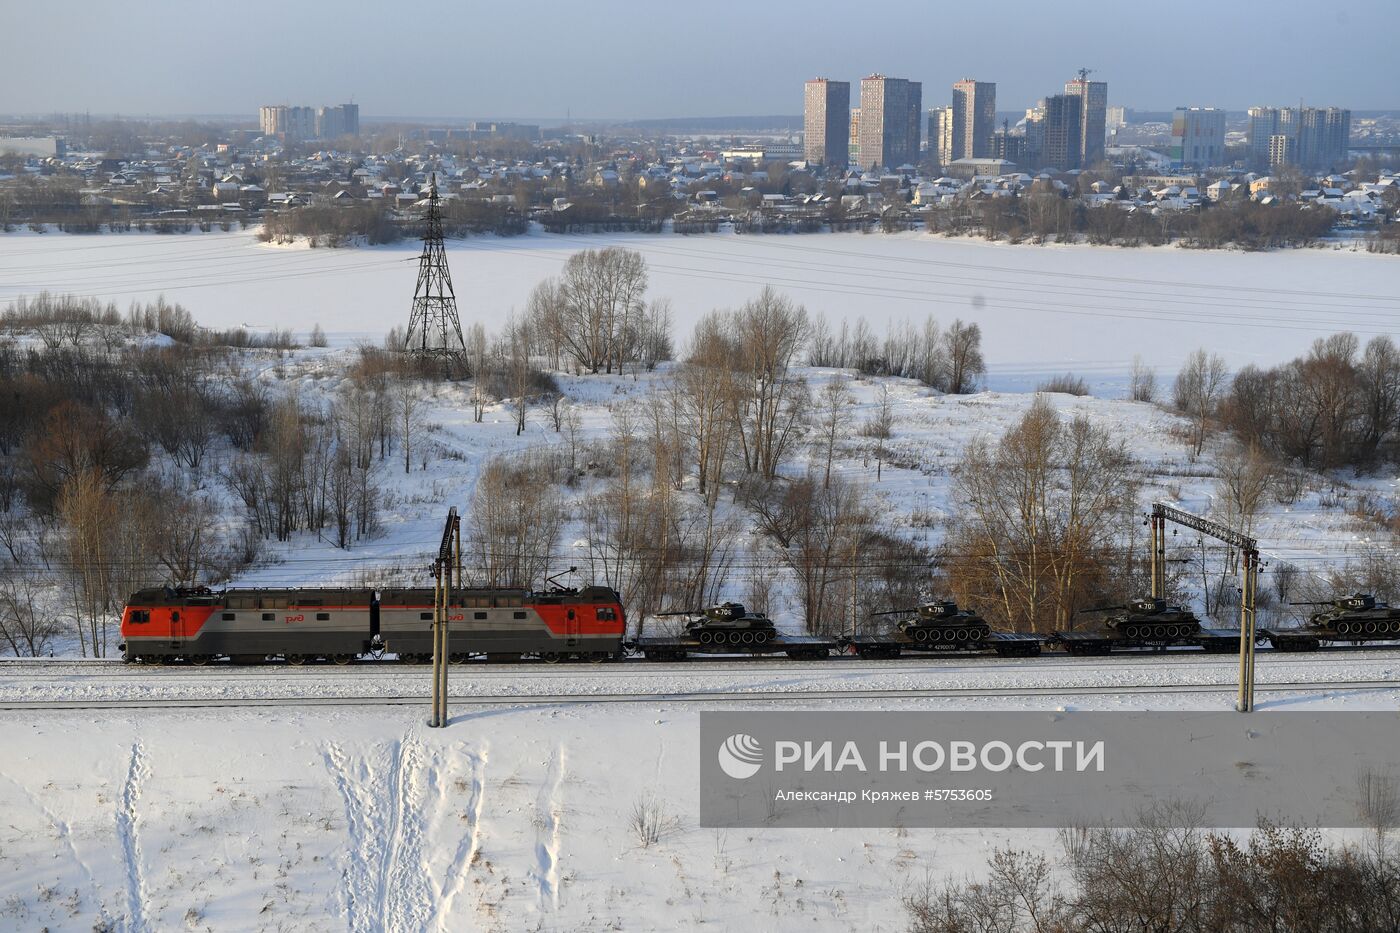 Прибытие эшелона с танками Т-34 в Новосибирск